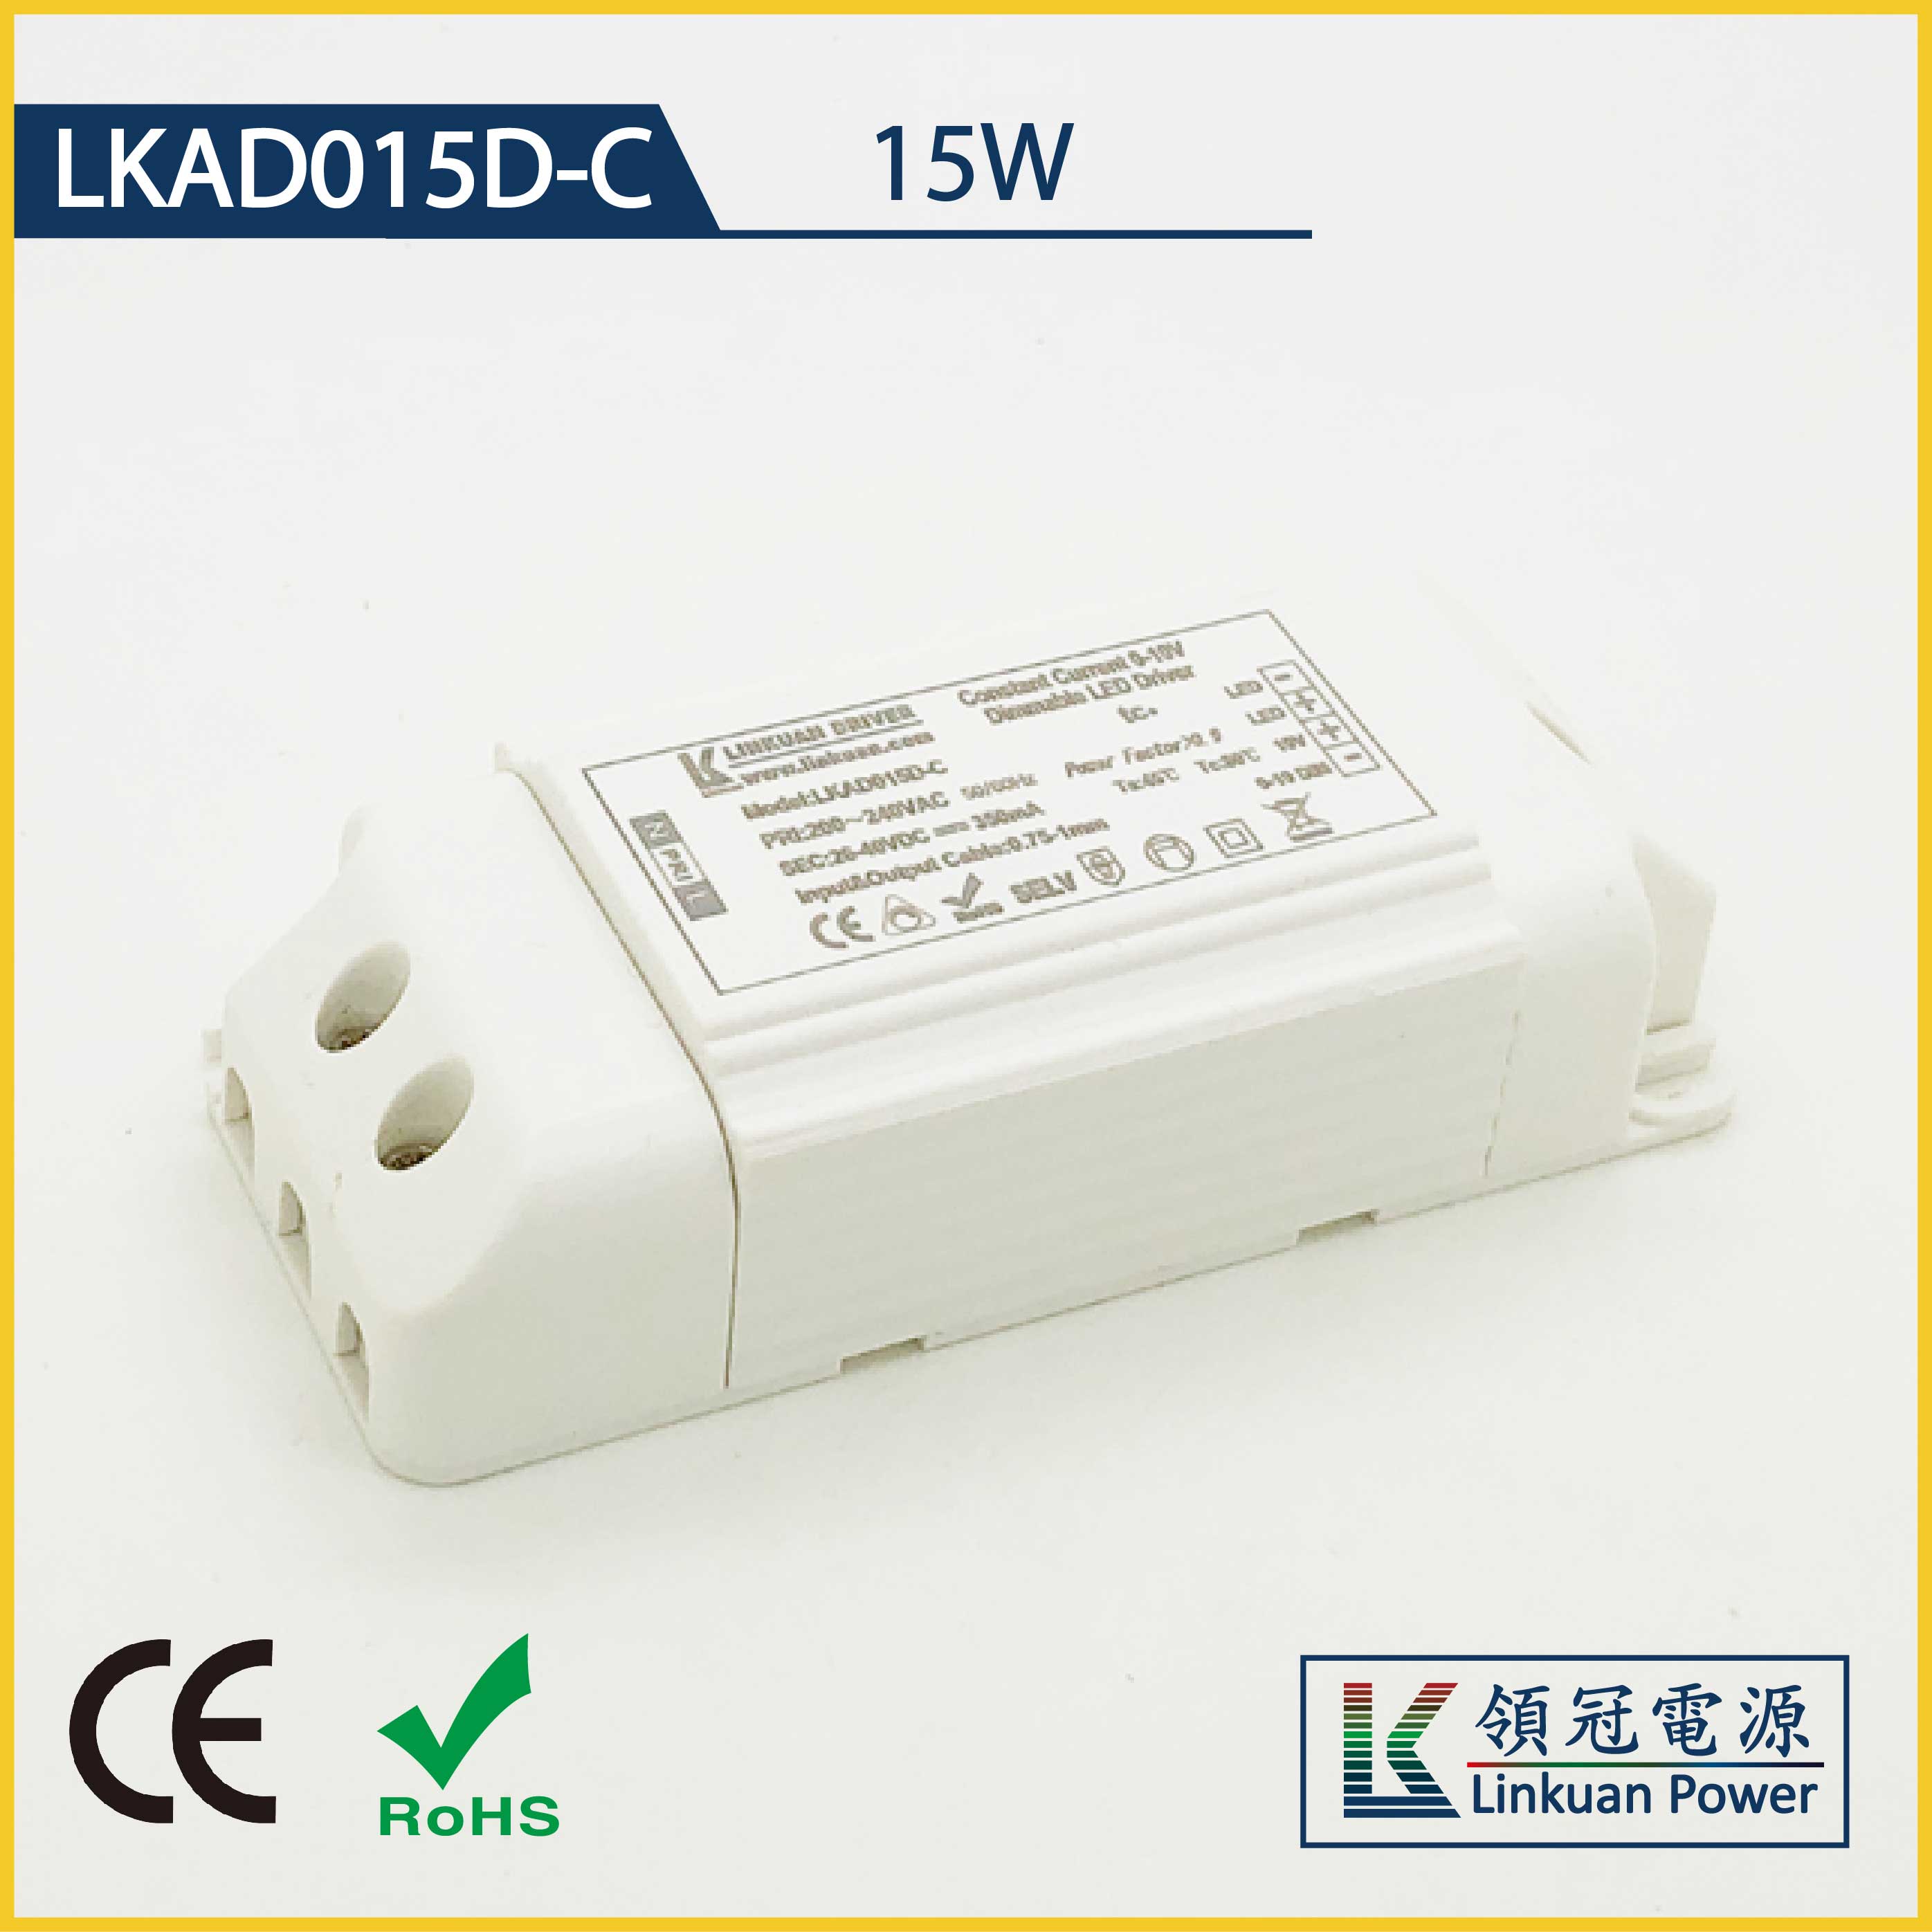 LKAD015D-C 15W 5-42V 350mA 0-10V Dimming LED drivers